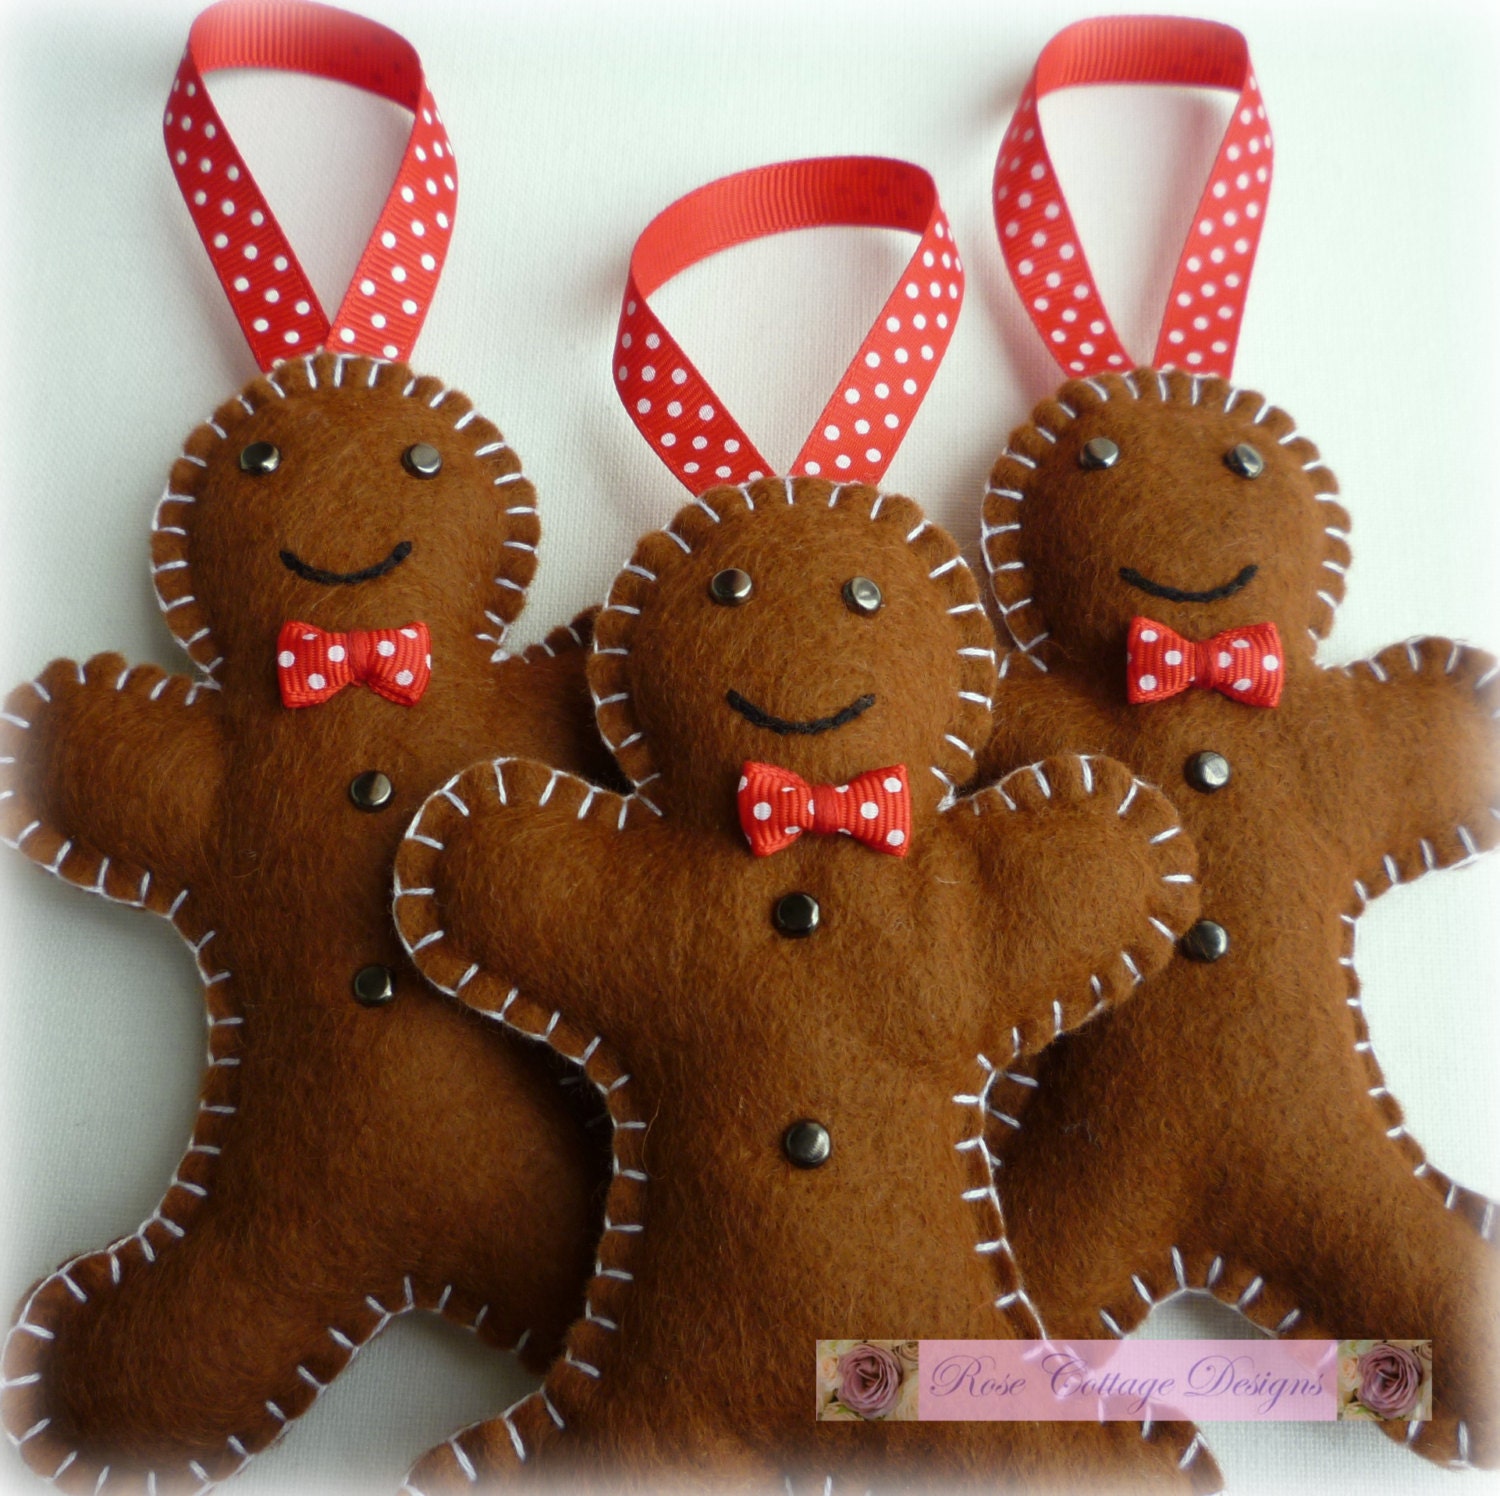 3-felt-gingerbread-men-handmade-ornaments